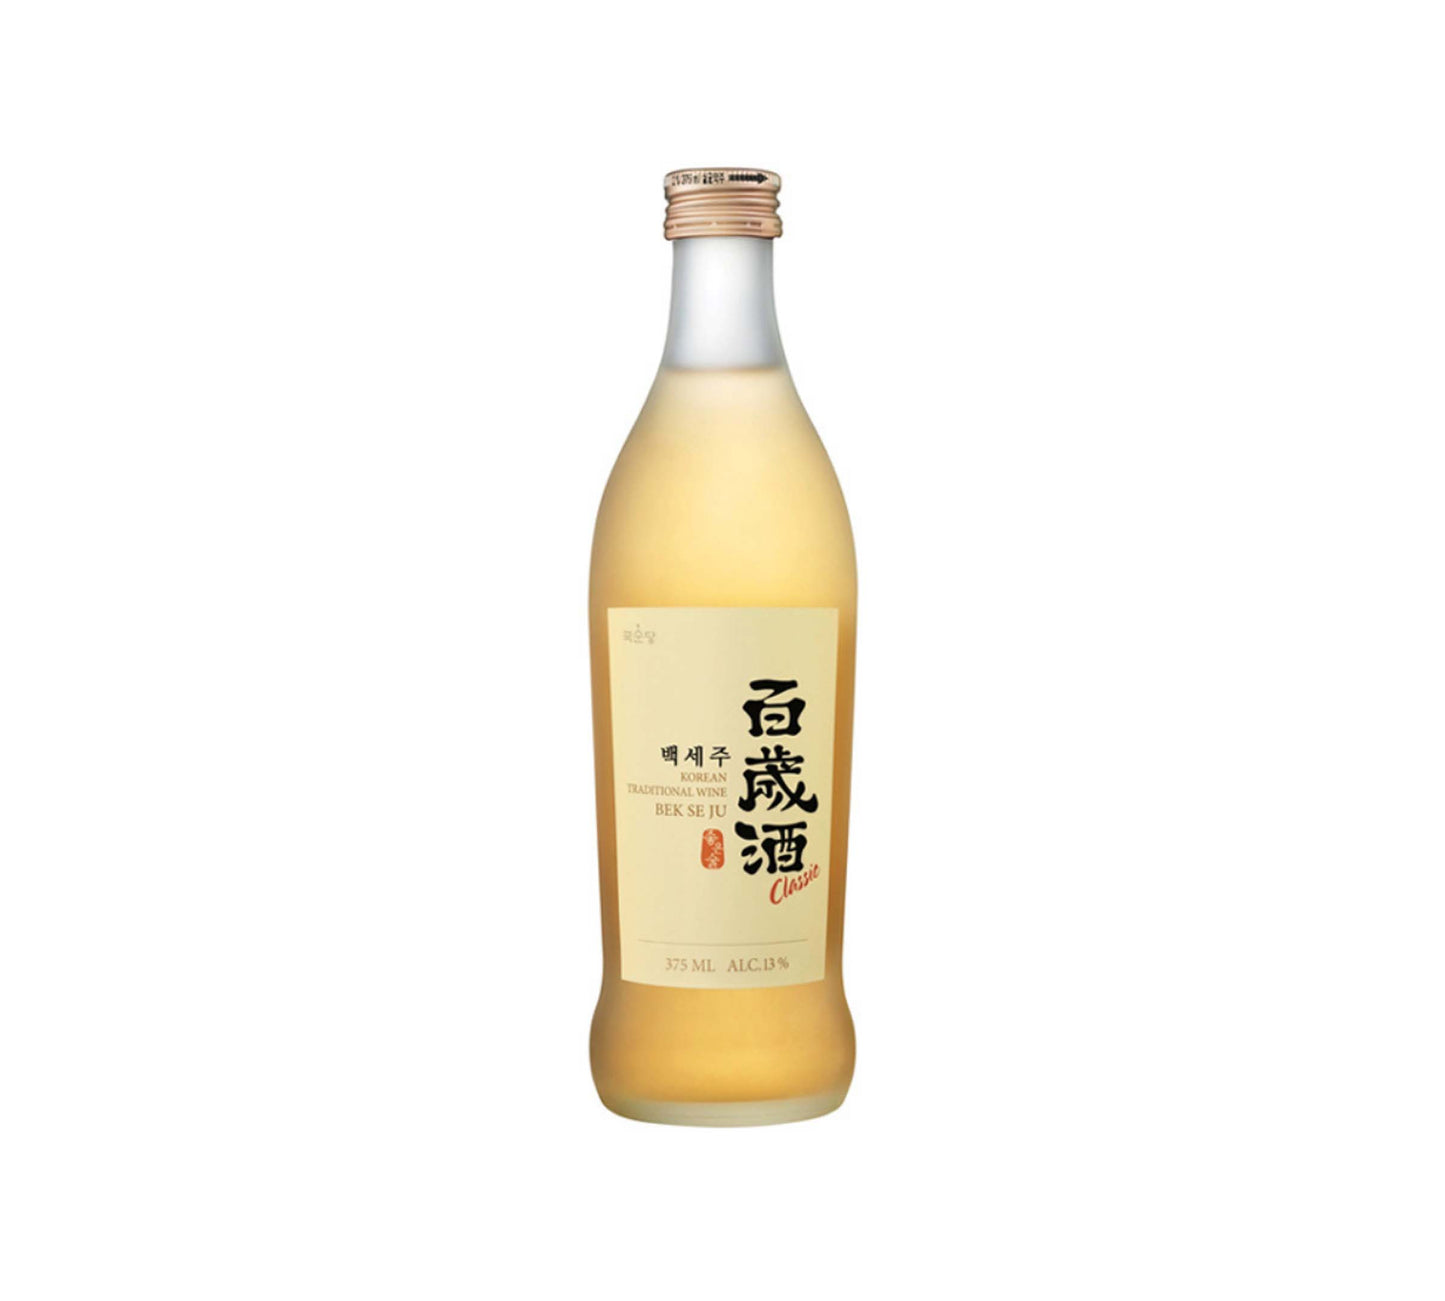 Kook Soon Dang BEKSEJU Korean Rice Wine (375 ml)